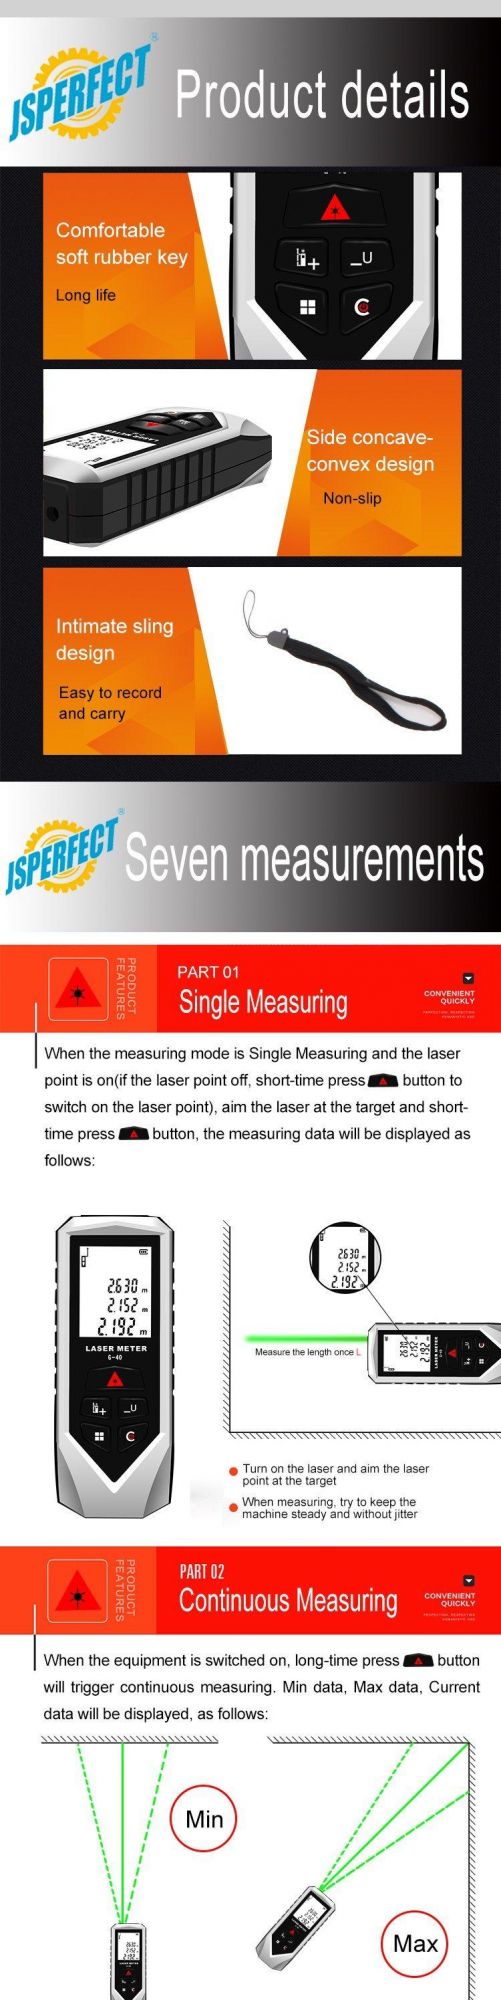 Handheld OEM Digital Green Laser Distance Meter Measure